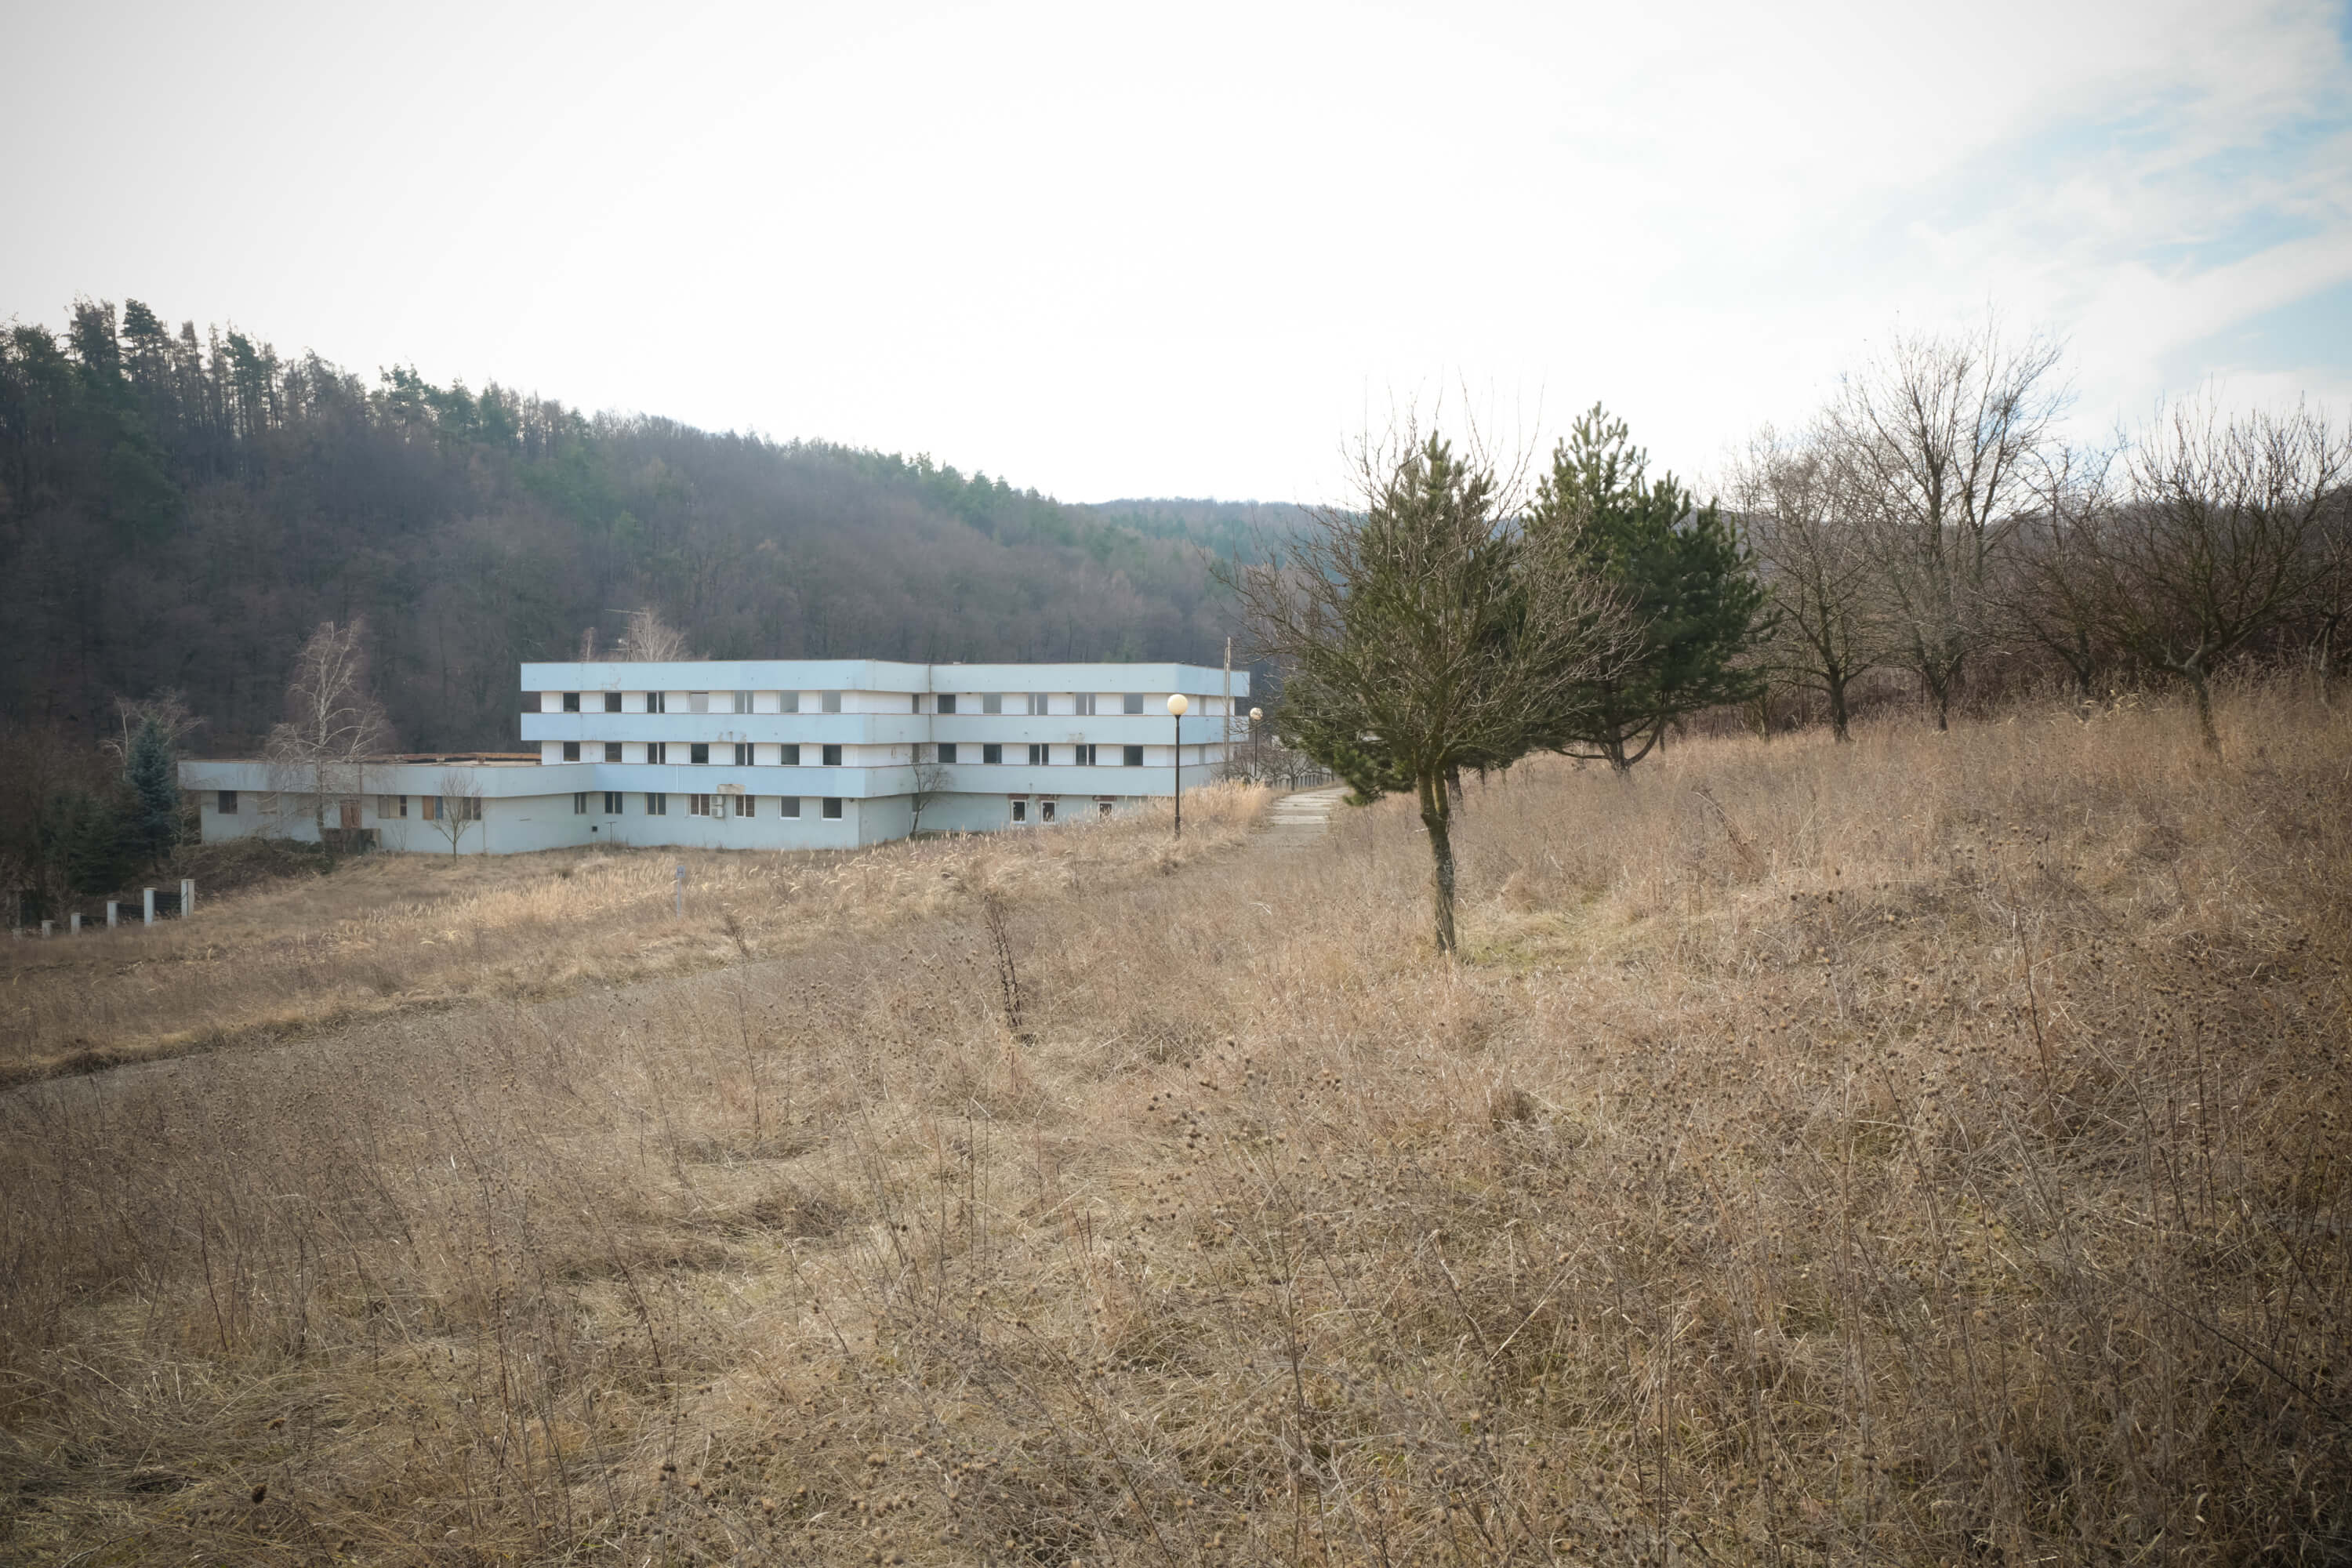 Predané: Zdravotnícke zariadenie, bývale sanatórium,komplex na predaj, Limbach, Potočná ulica, pozemky 21164m2, úžitkova spolu 3159m2-8